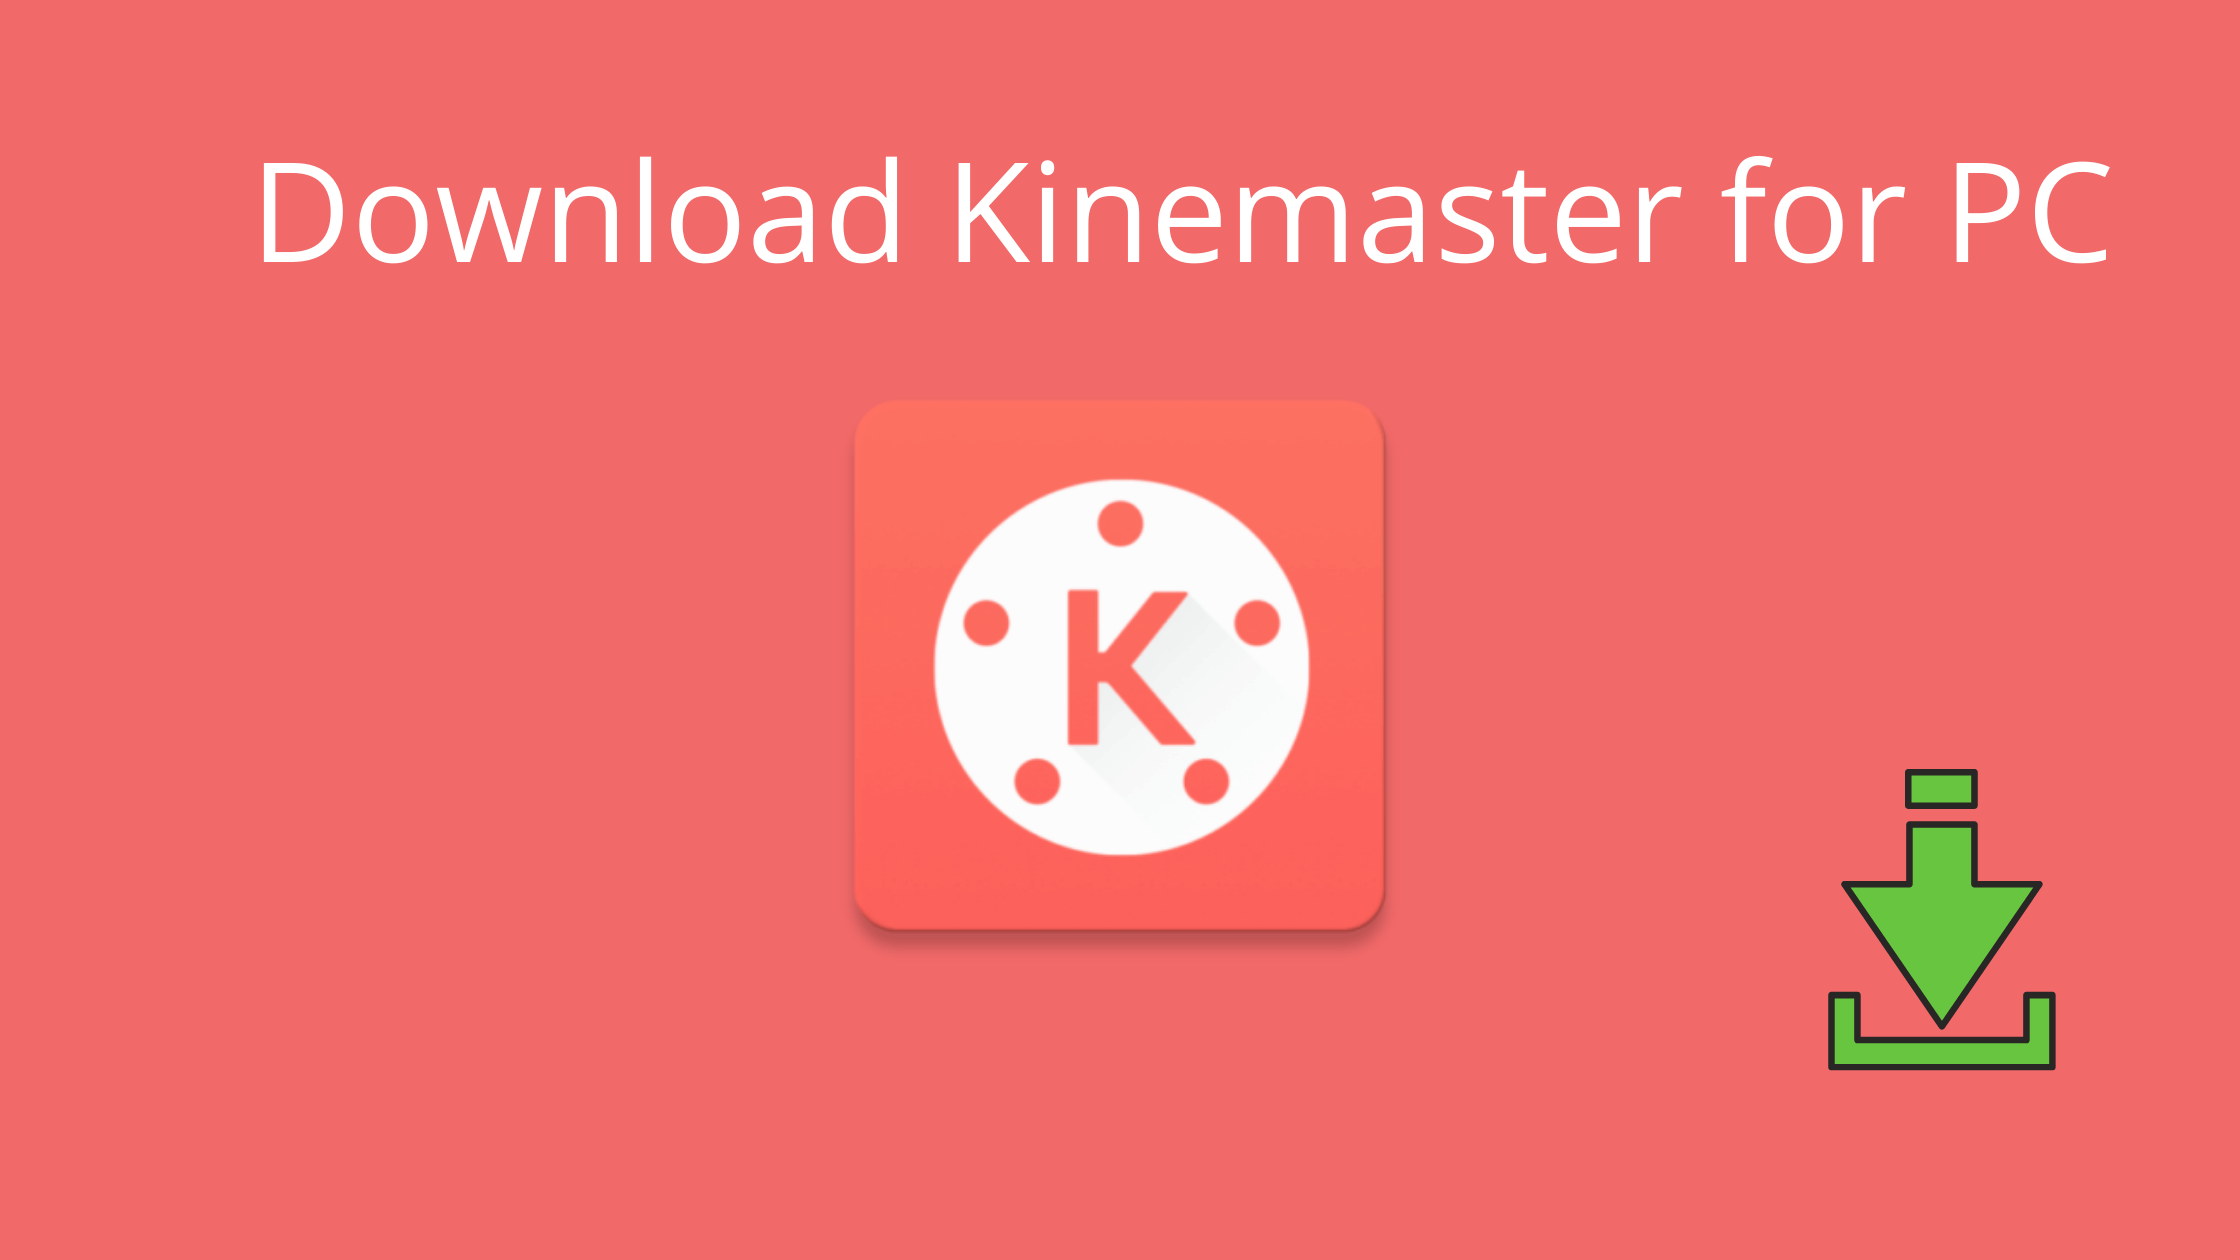 kinemaster download windows 10